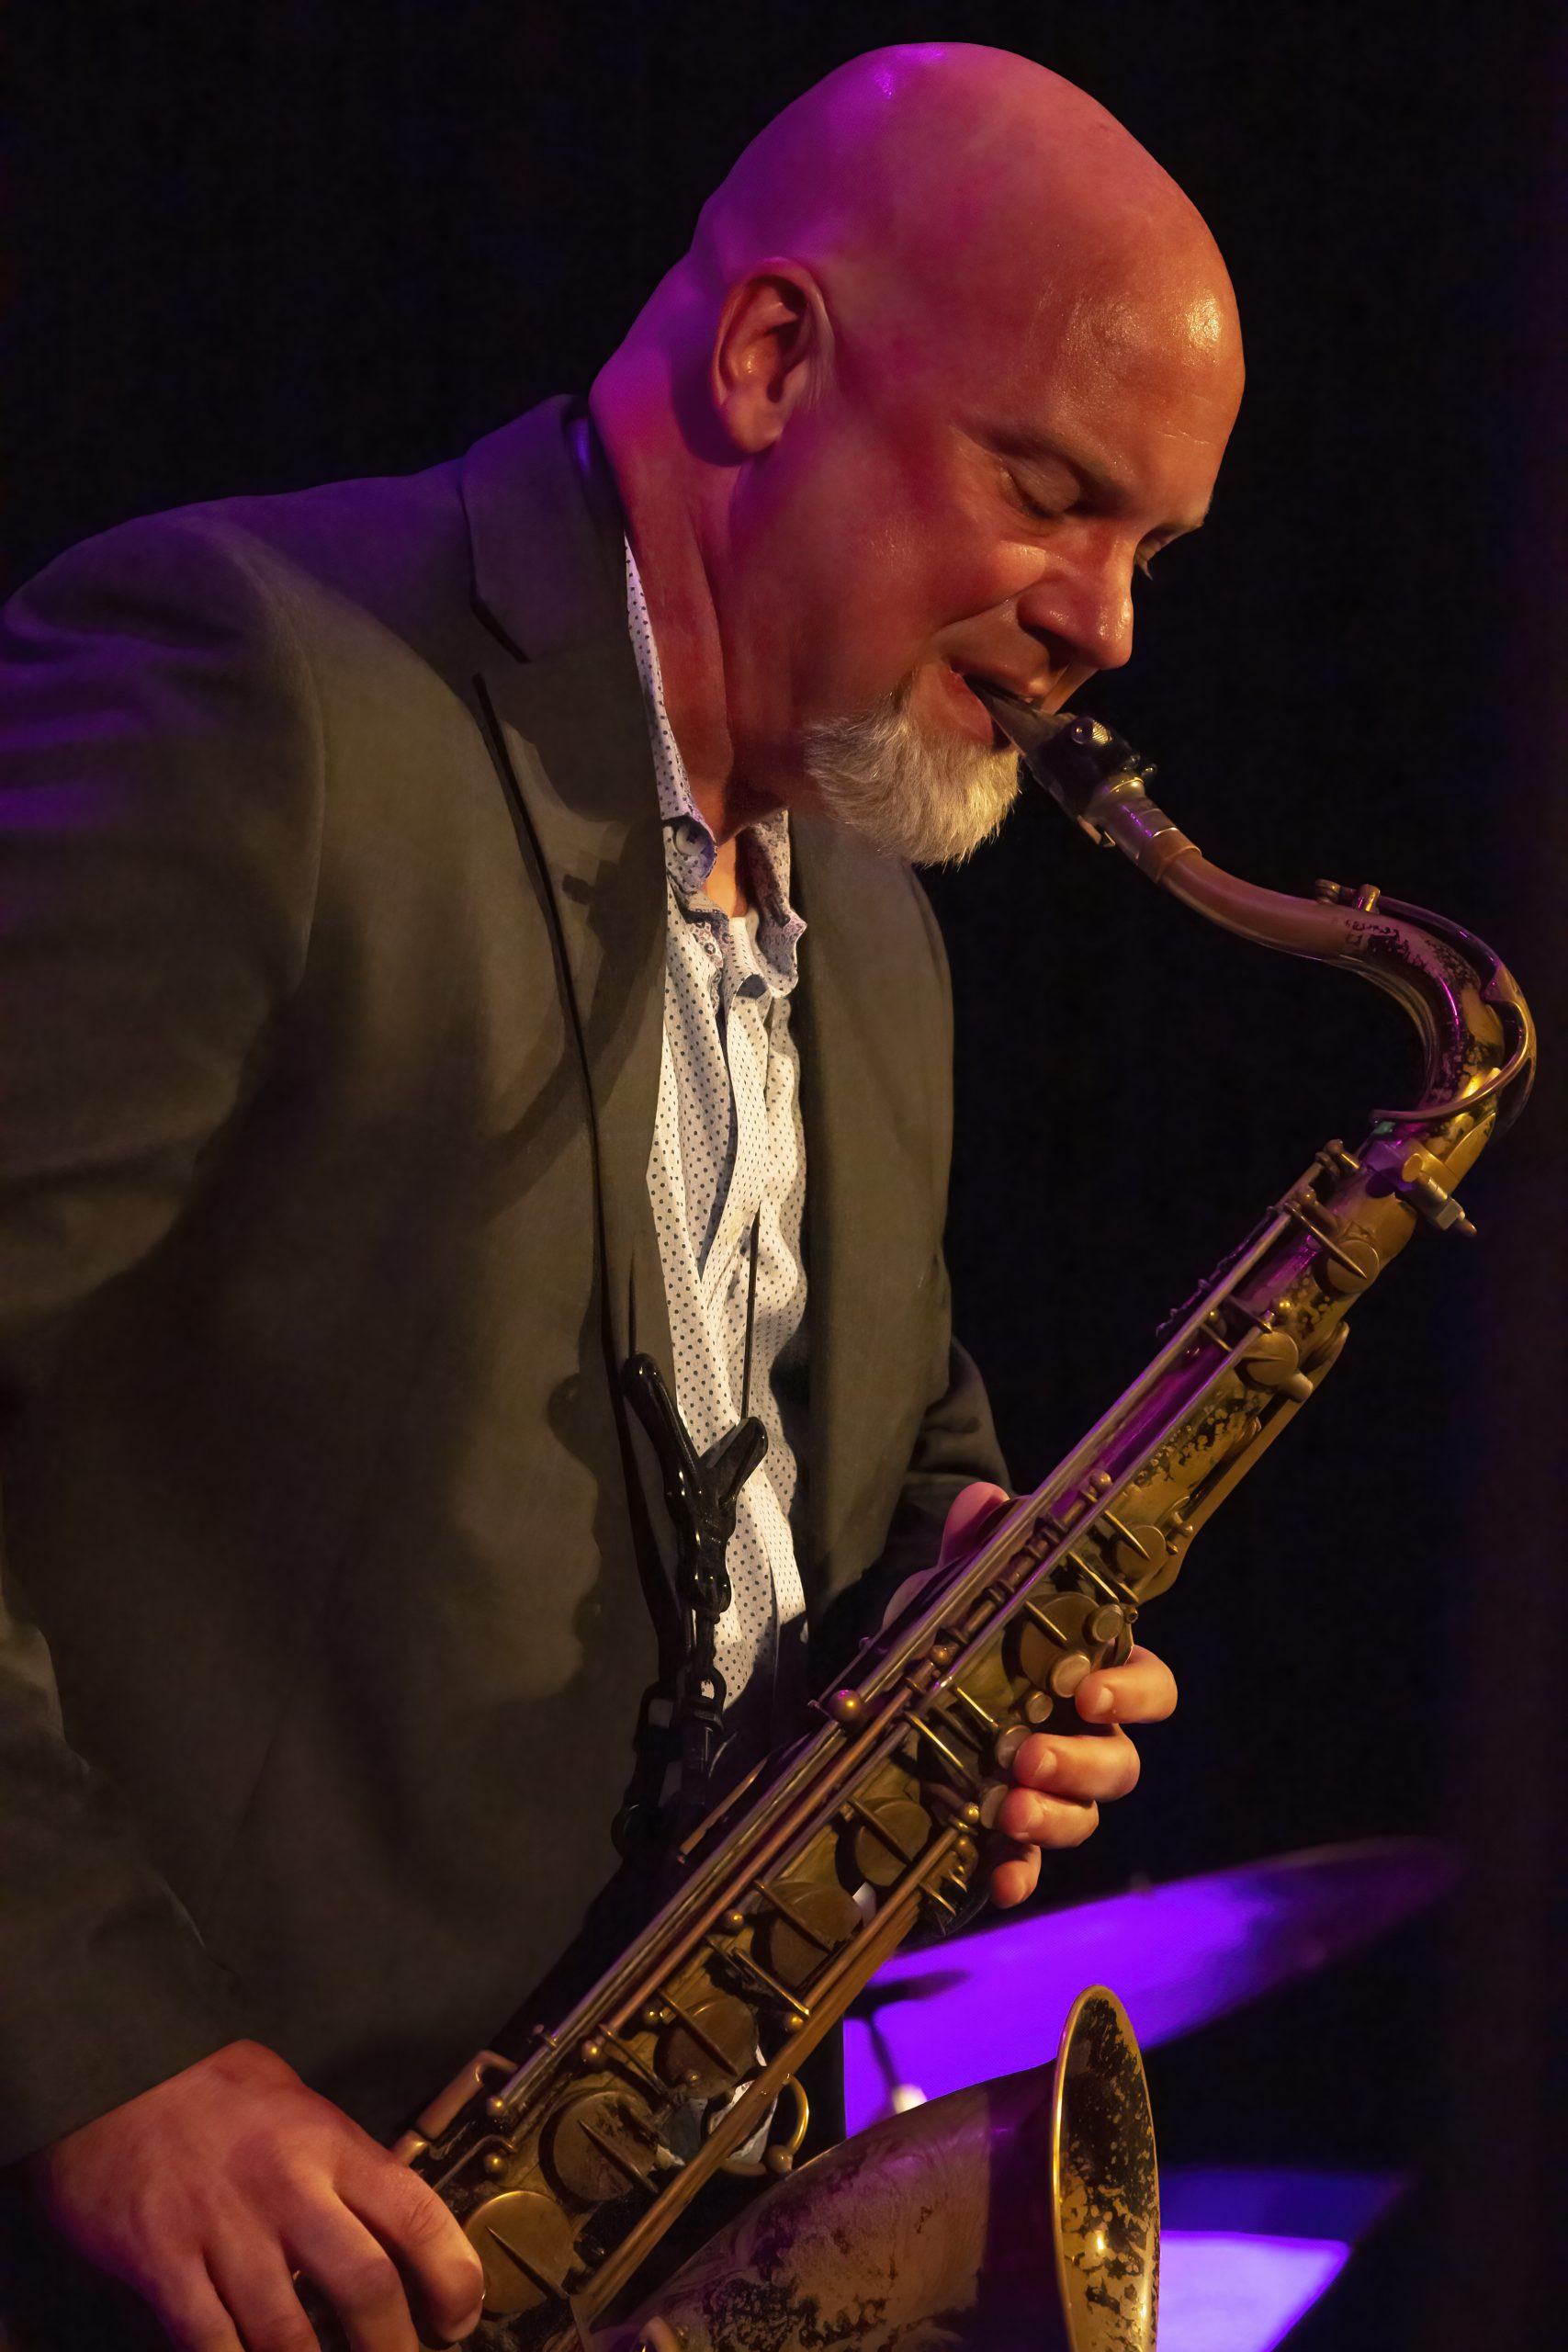 John Coltrane event at Festival Hall - Greensboro GA